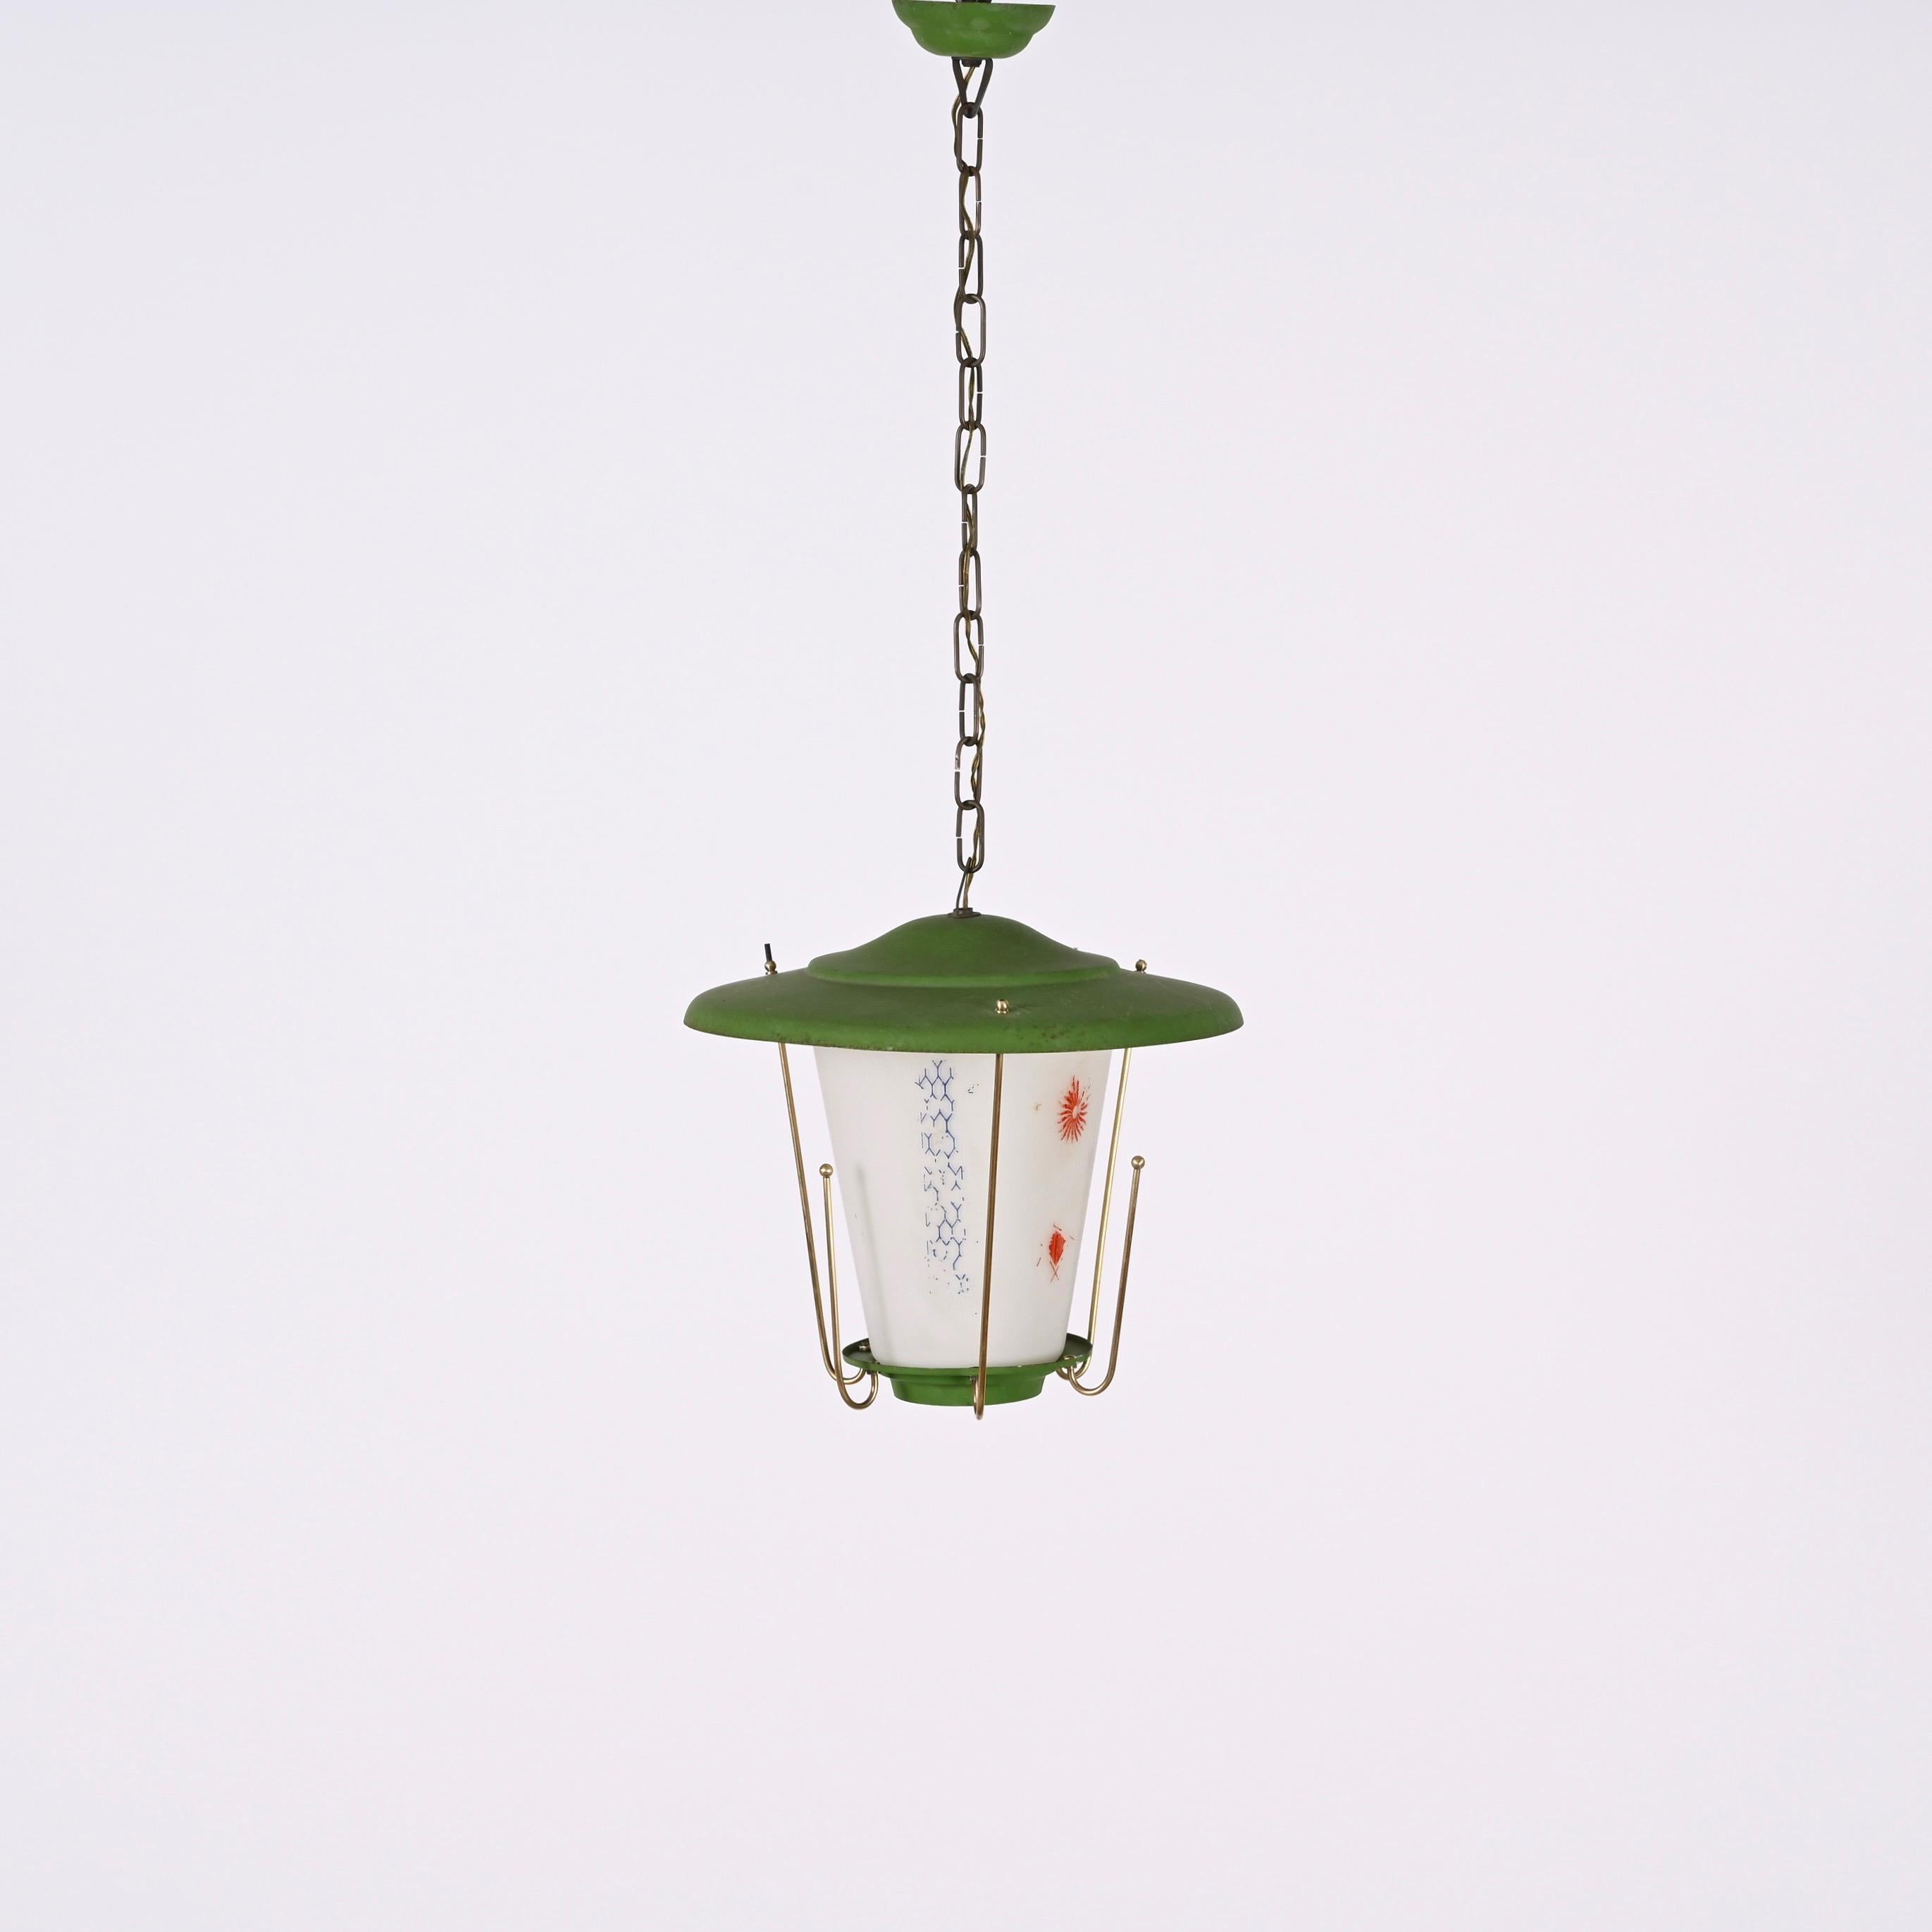 Amazing mid-century round opaline glass and brass green lantern chandelier. Cette pièce fantastique a été conçue en Italie dans les années 1950.

Cette pièce est magnifique car la combinaison des matériaux et des couleurs est très typique de